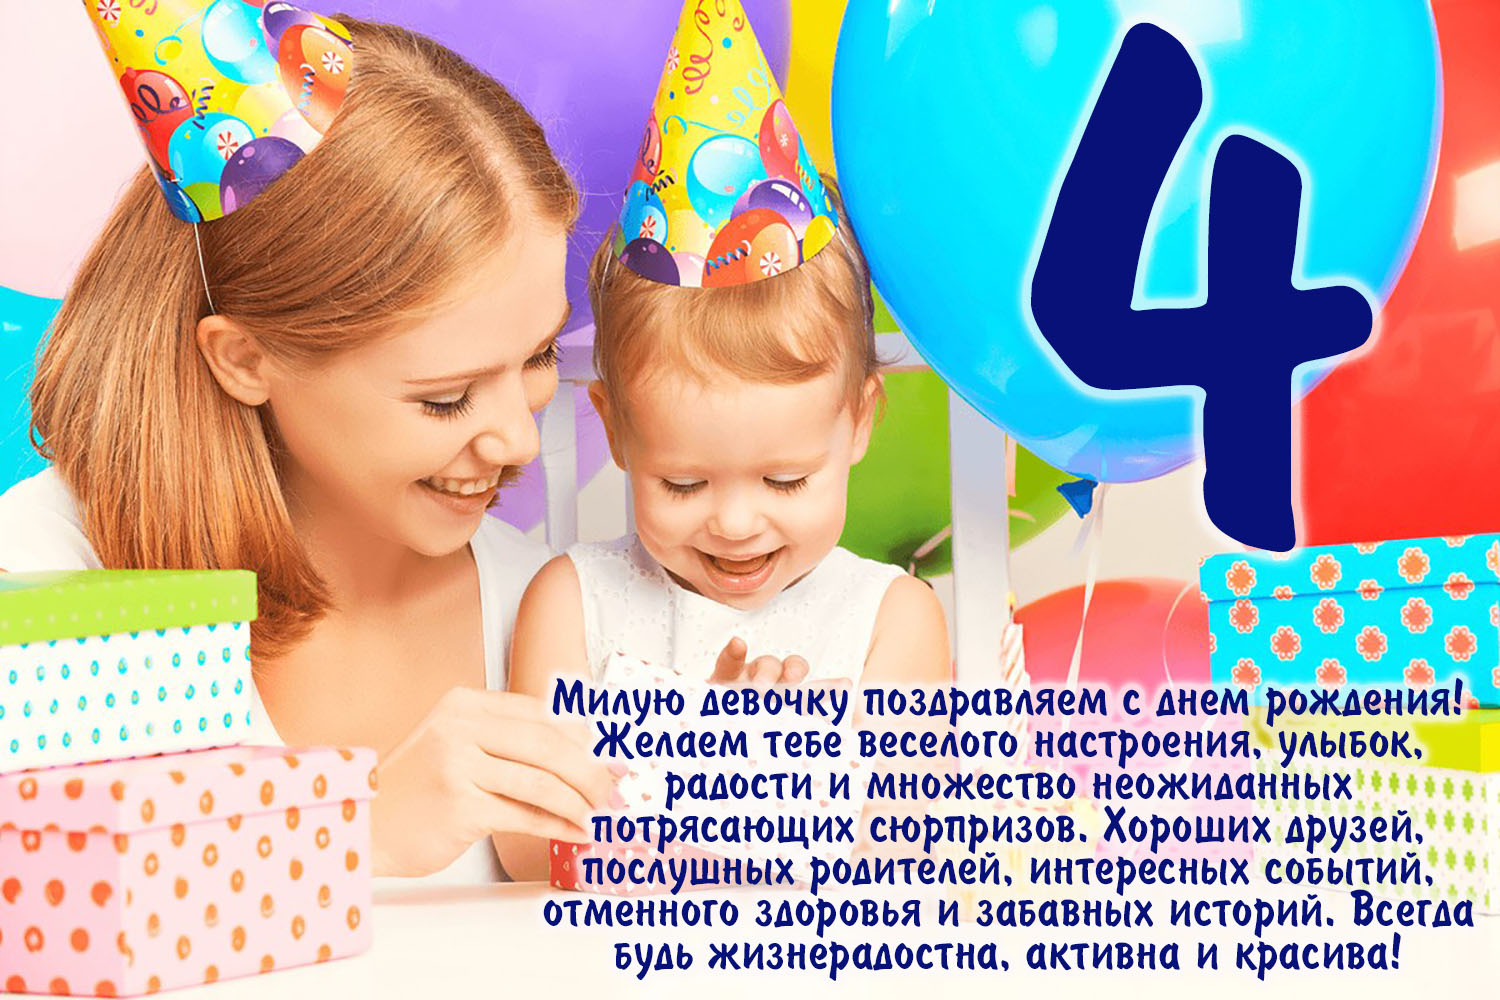 Ребенку 4 поздравить. С днем рождения девочк4 года. С днём рождения дныочке 4 года. С днём рождения 4 года девочке. Поздравление с 4 летием девочке.